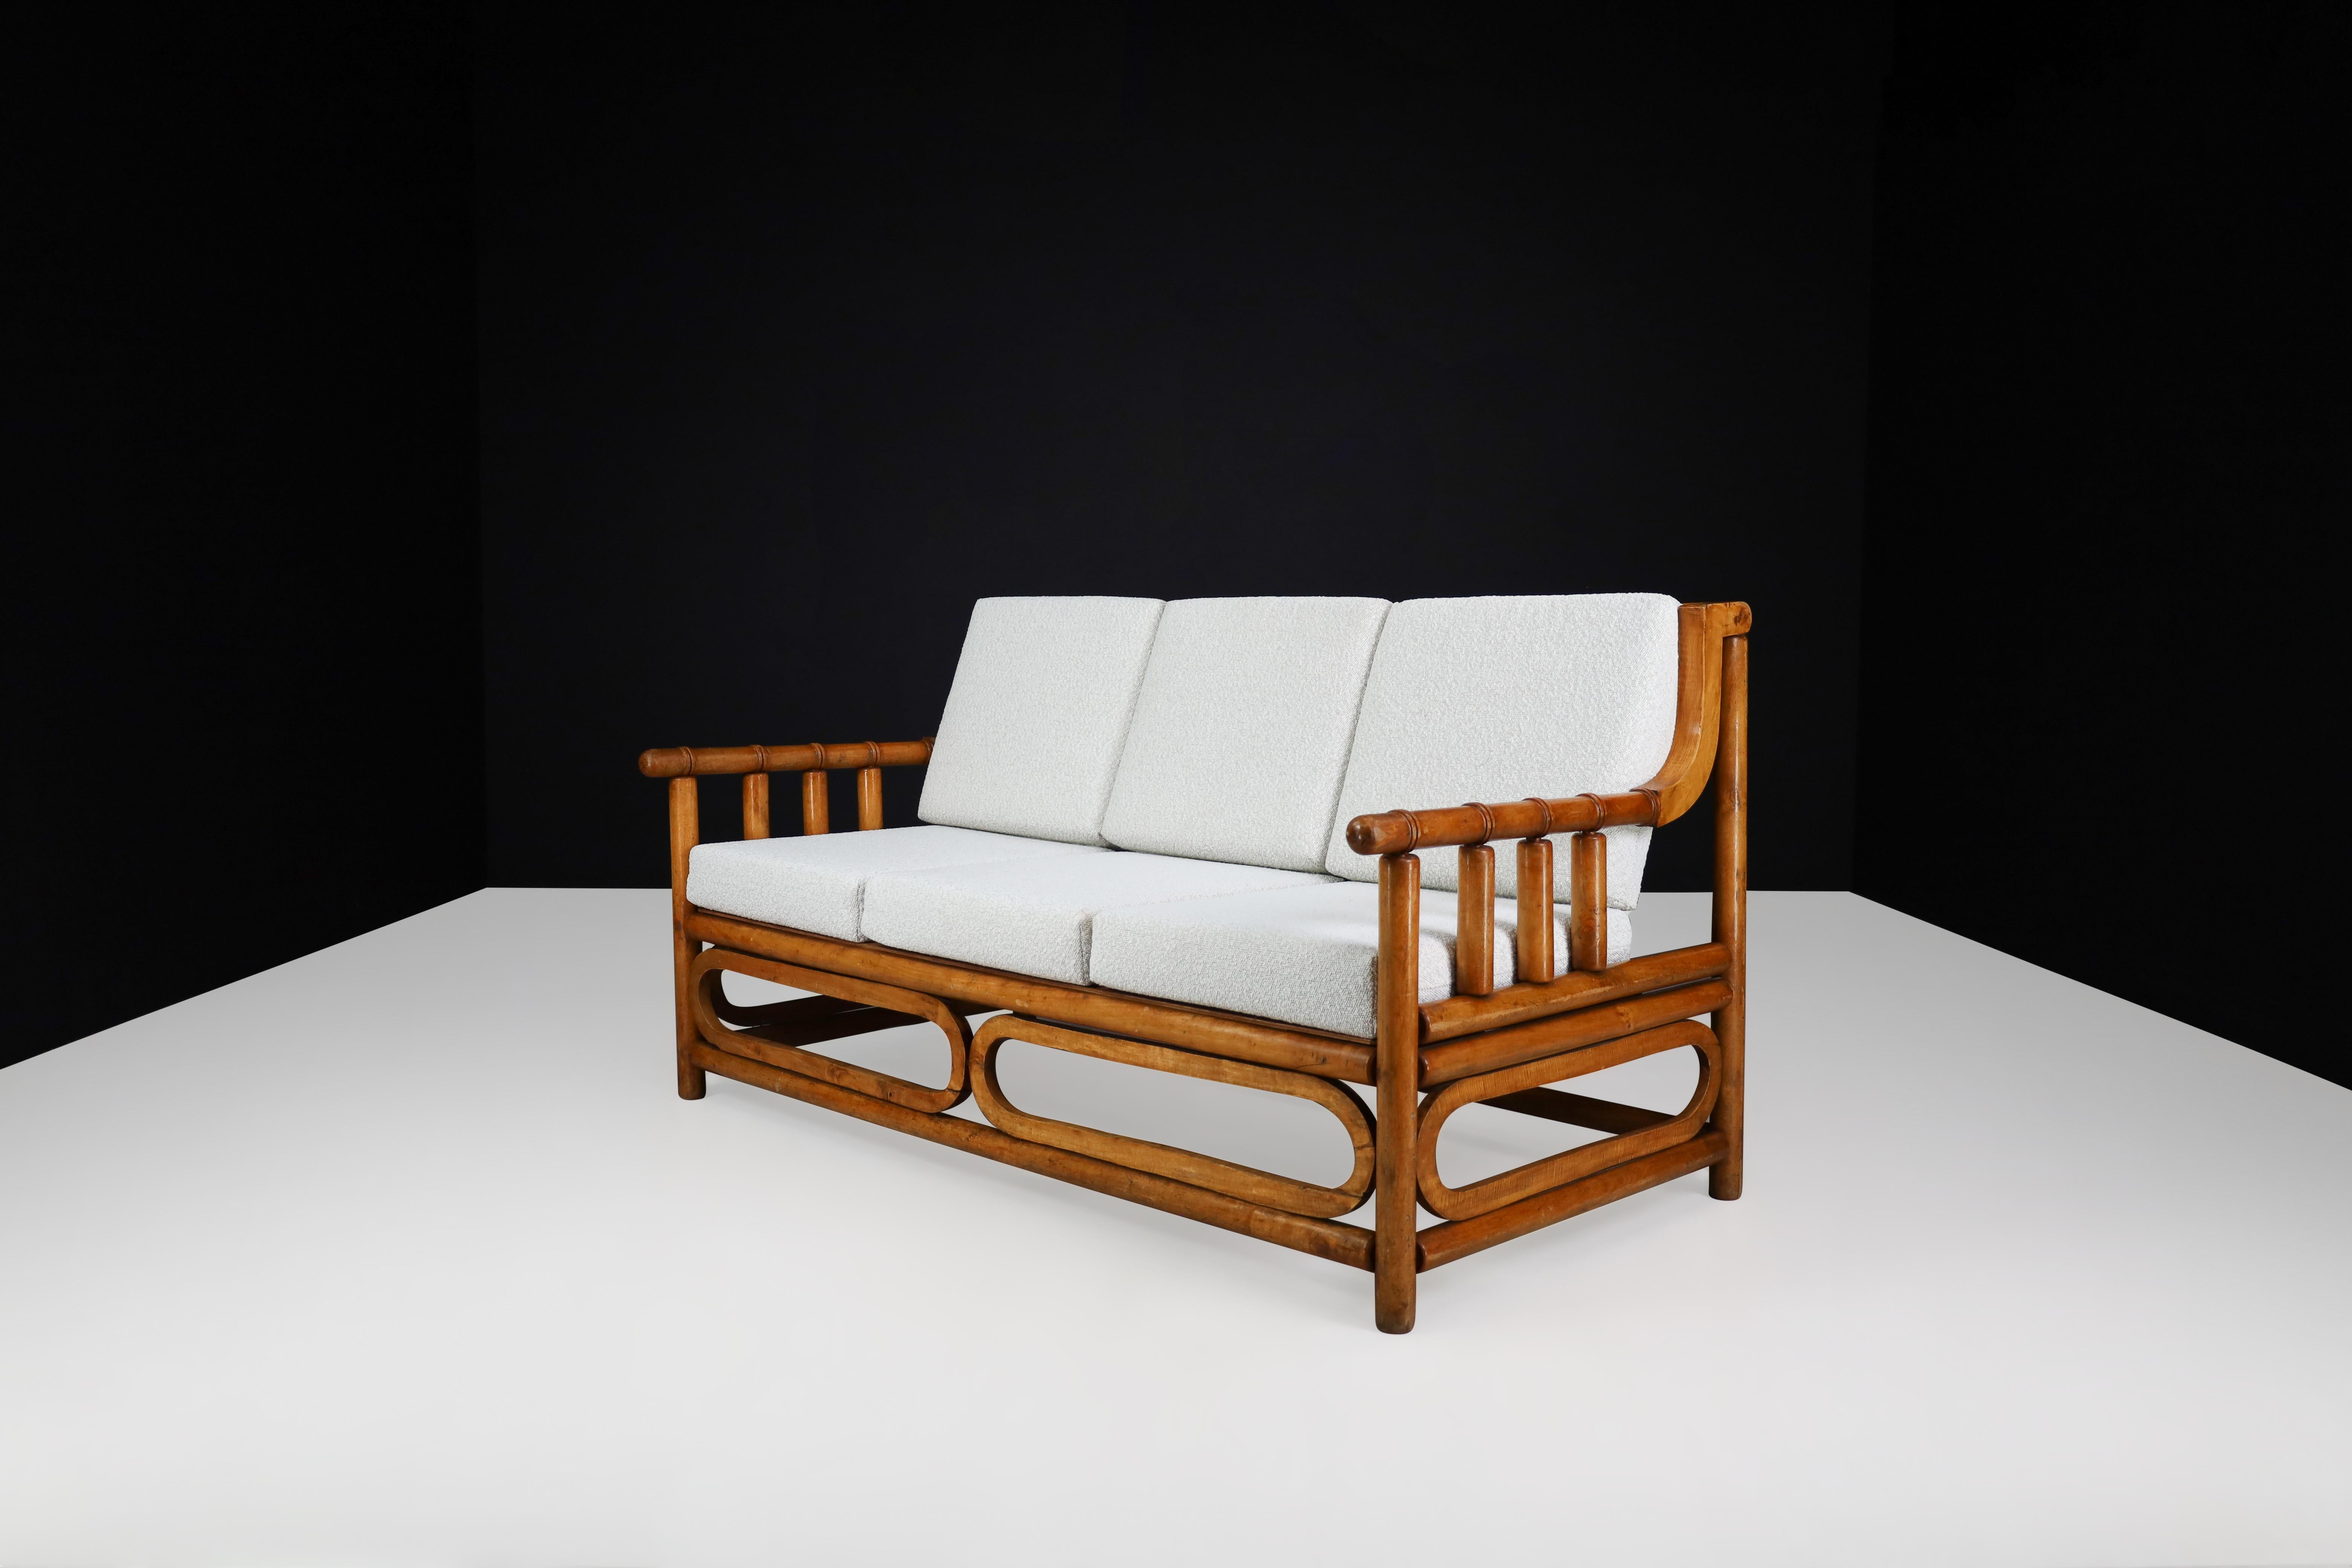 Sofa aus der Mitte des Jahrhunderts aus Bambusholz und Bouclé-Polsterung, Frankreich, 1950er Jahre.

Dieses exquisite Sofa aus Bambus und Holz stammt aus Frankreich und wurde in den 1950er Jahren mit Raffinesse hergestellt. Die kürzlich erfolgte